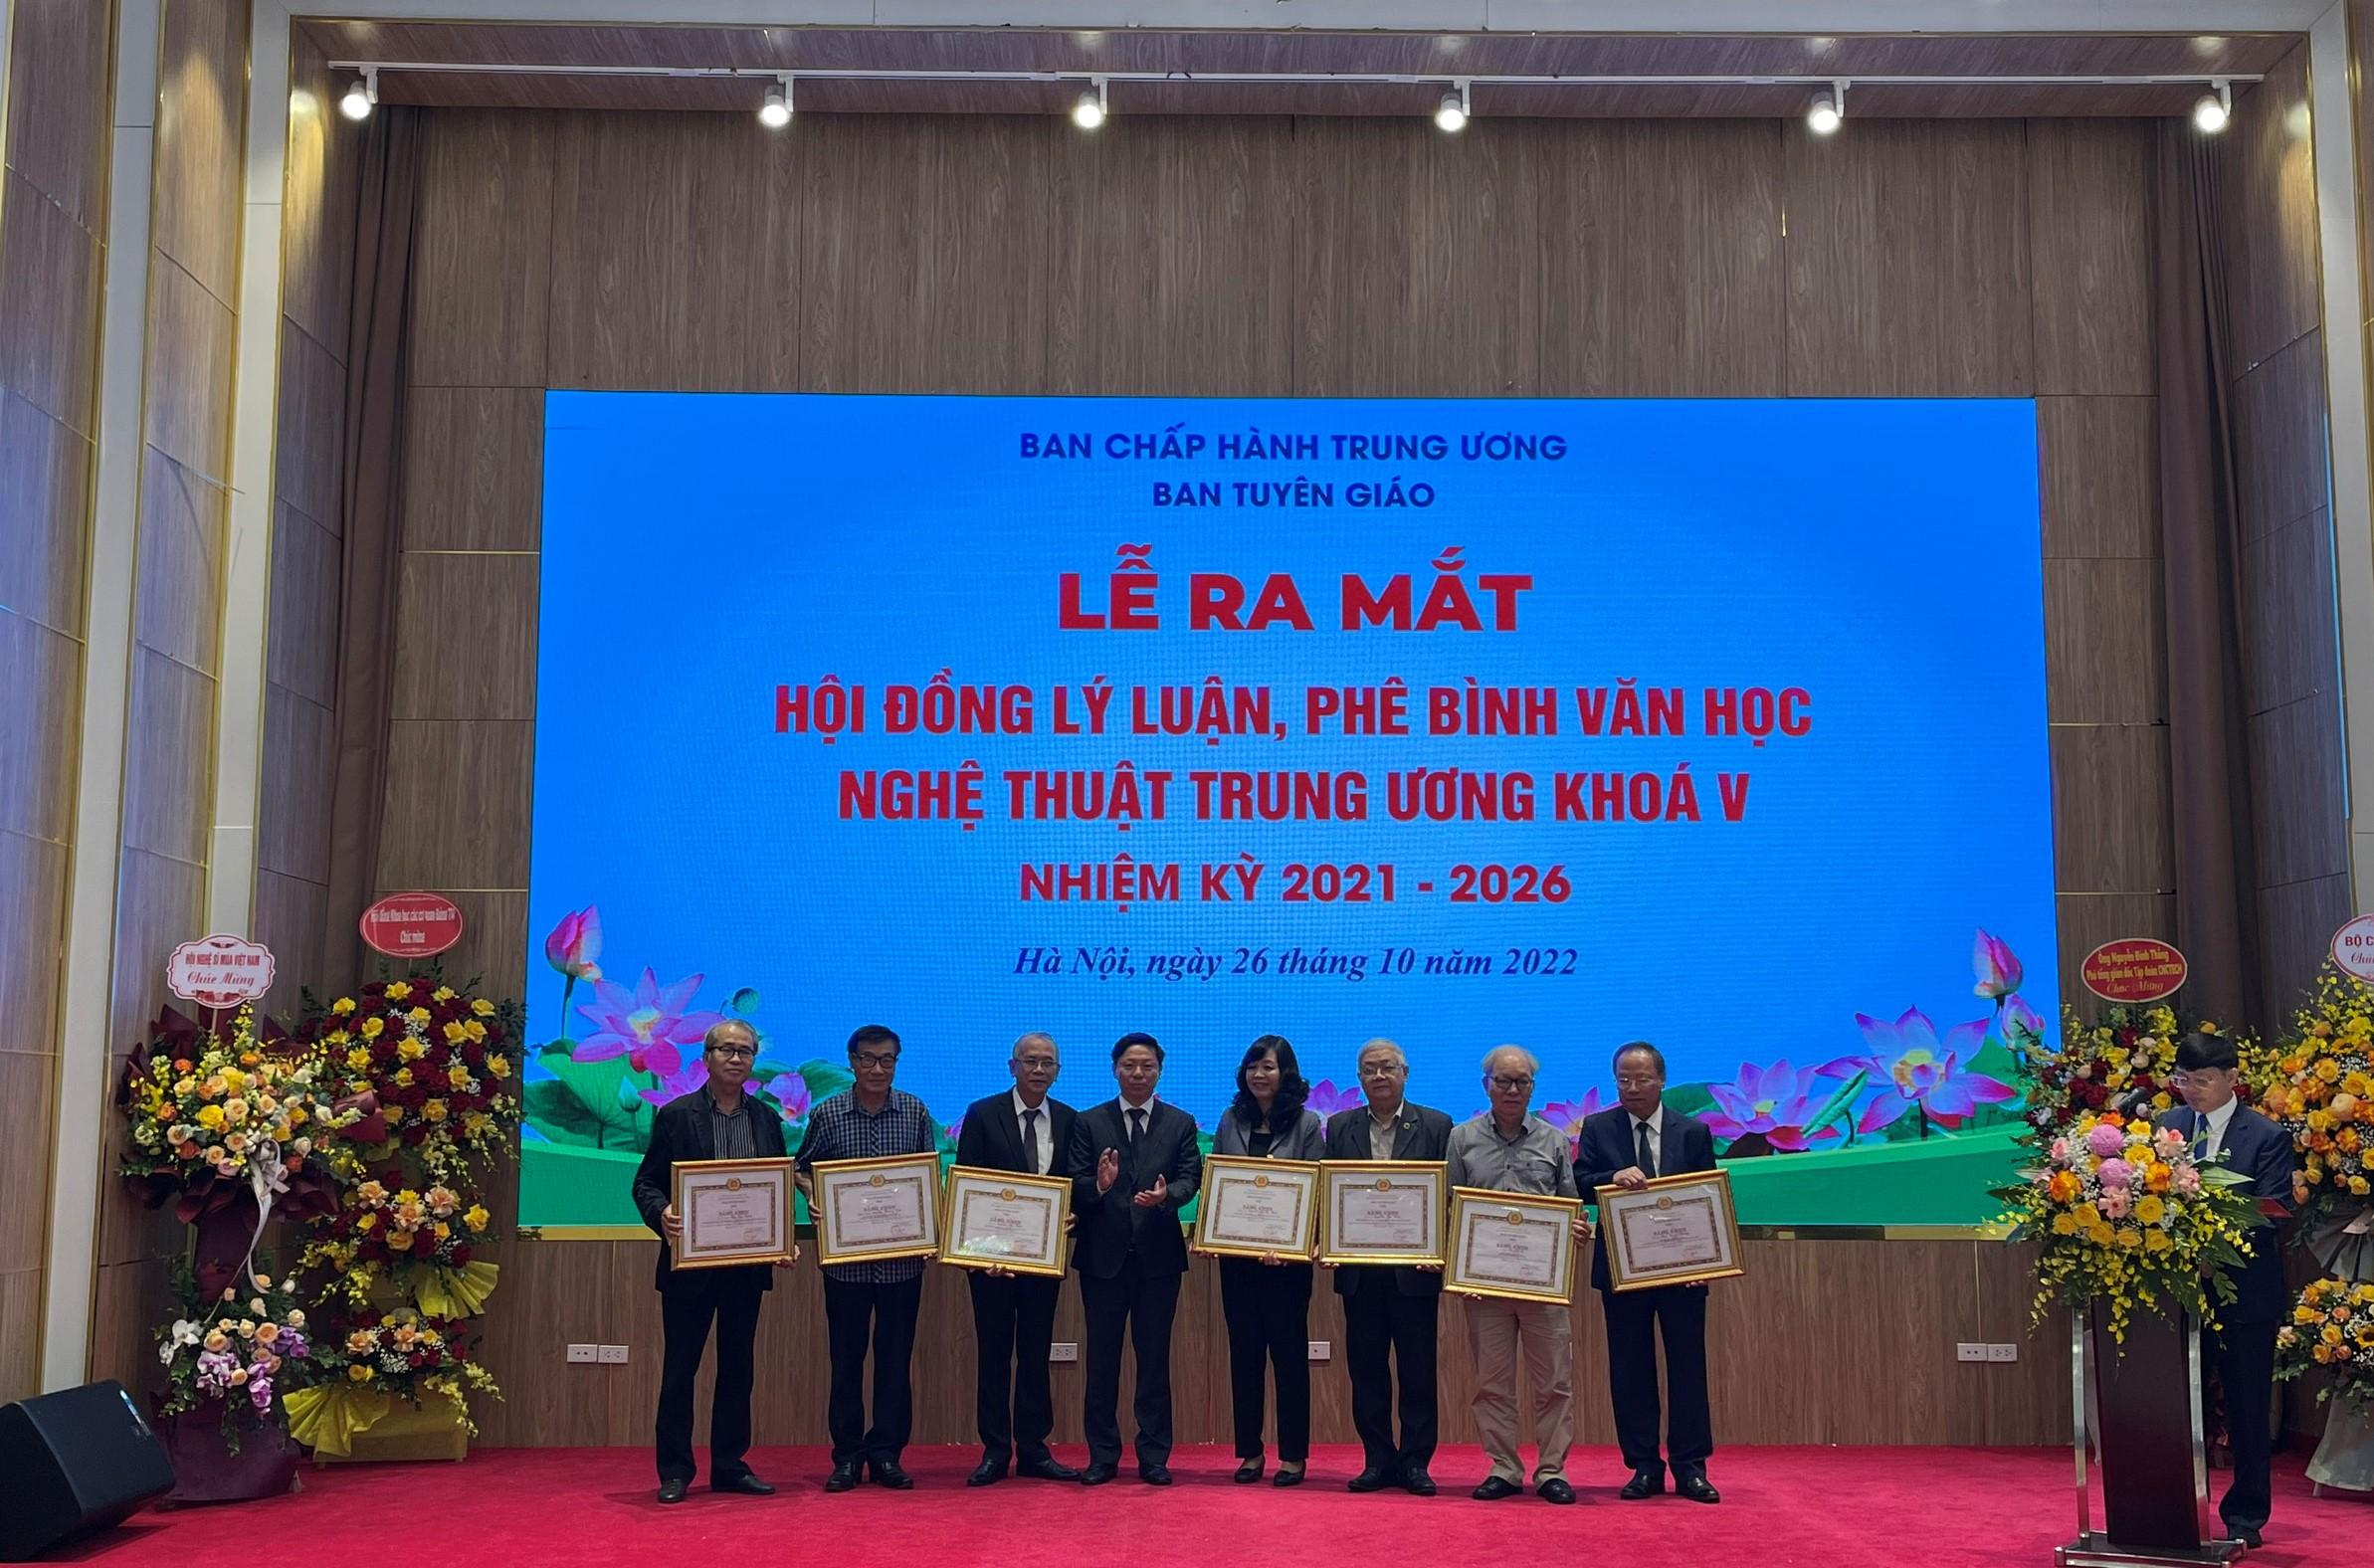 Đồng chí Trần Thanh Lâm - Phó Trưởng ban Tuyên giáo Trung ương trao bằng khen cho các đồng chí tham gia Hội đồng khóa IV.